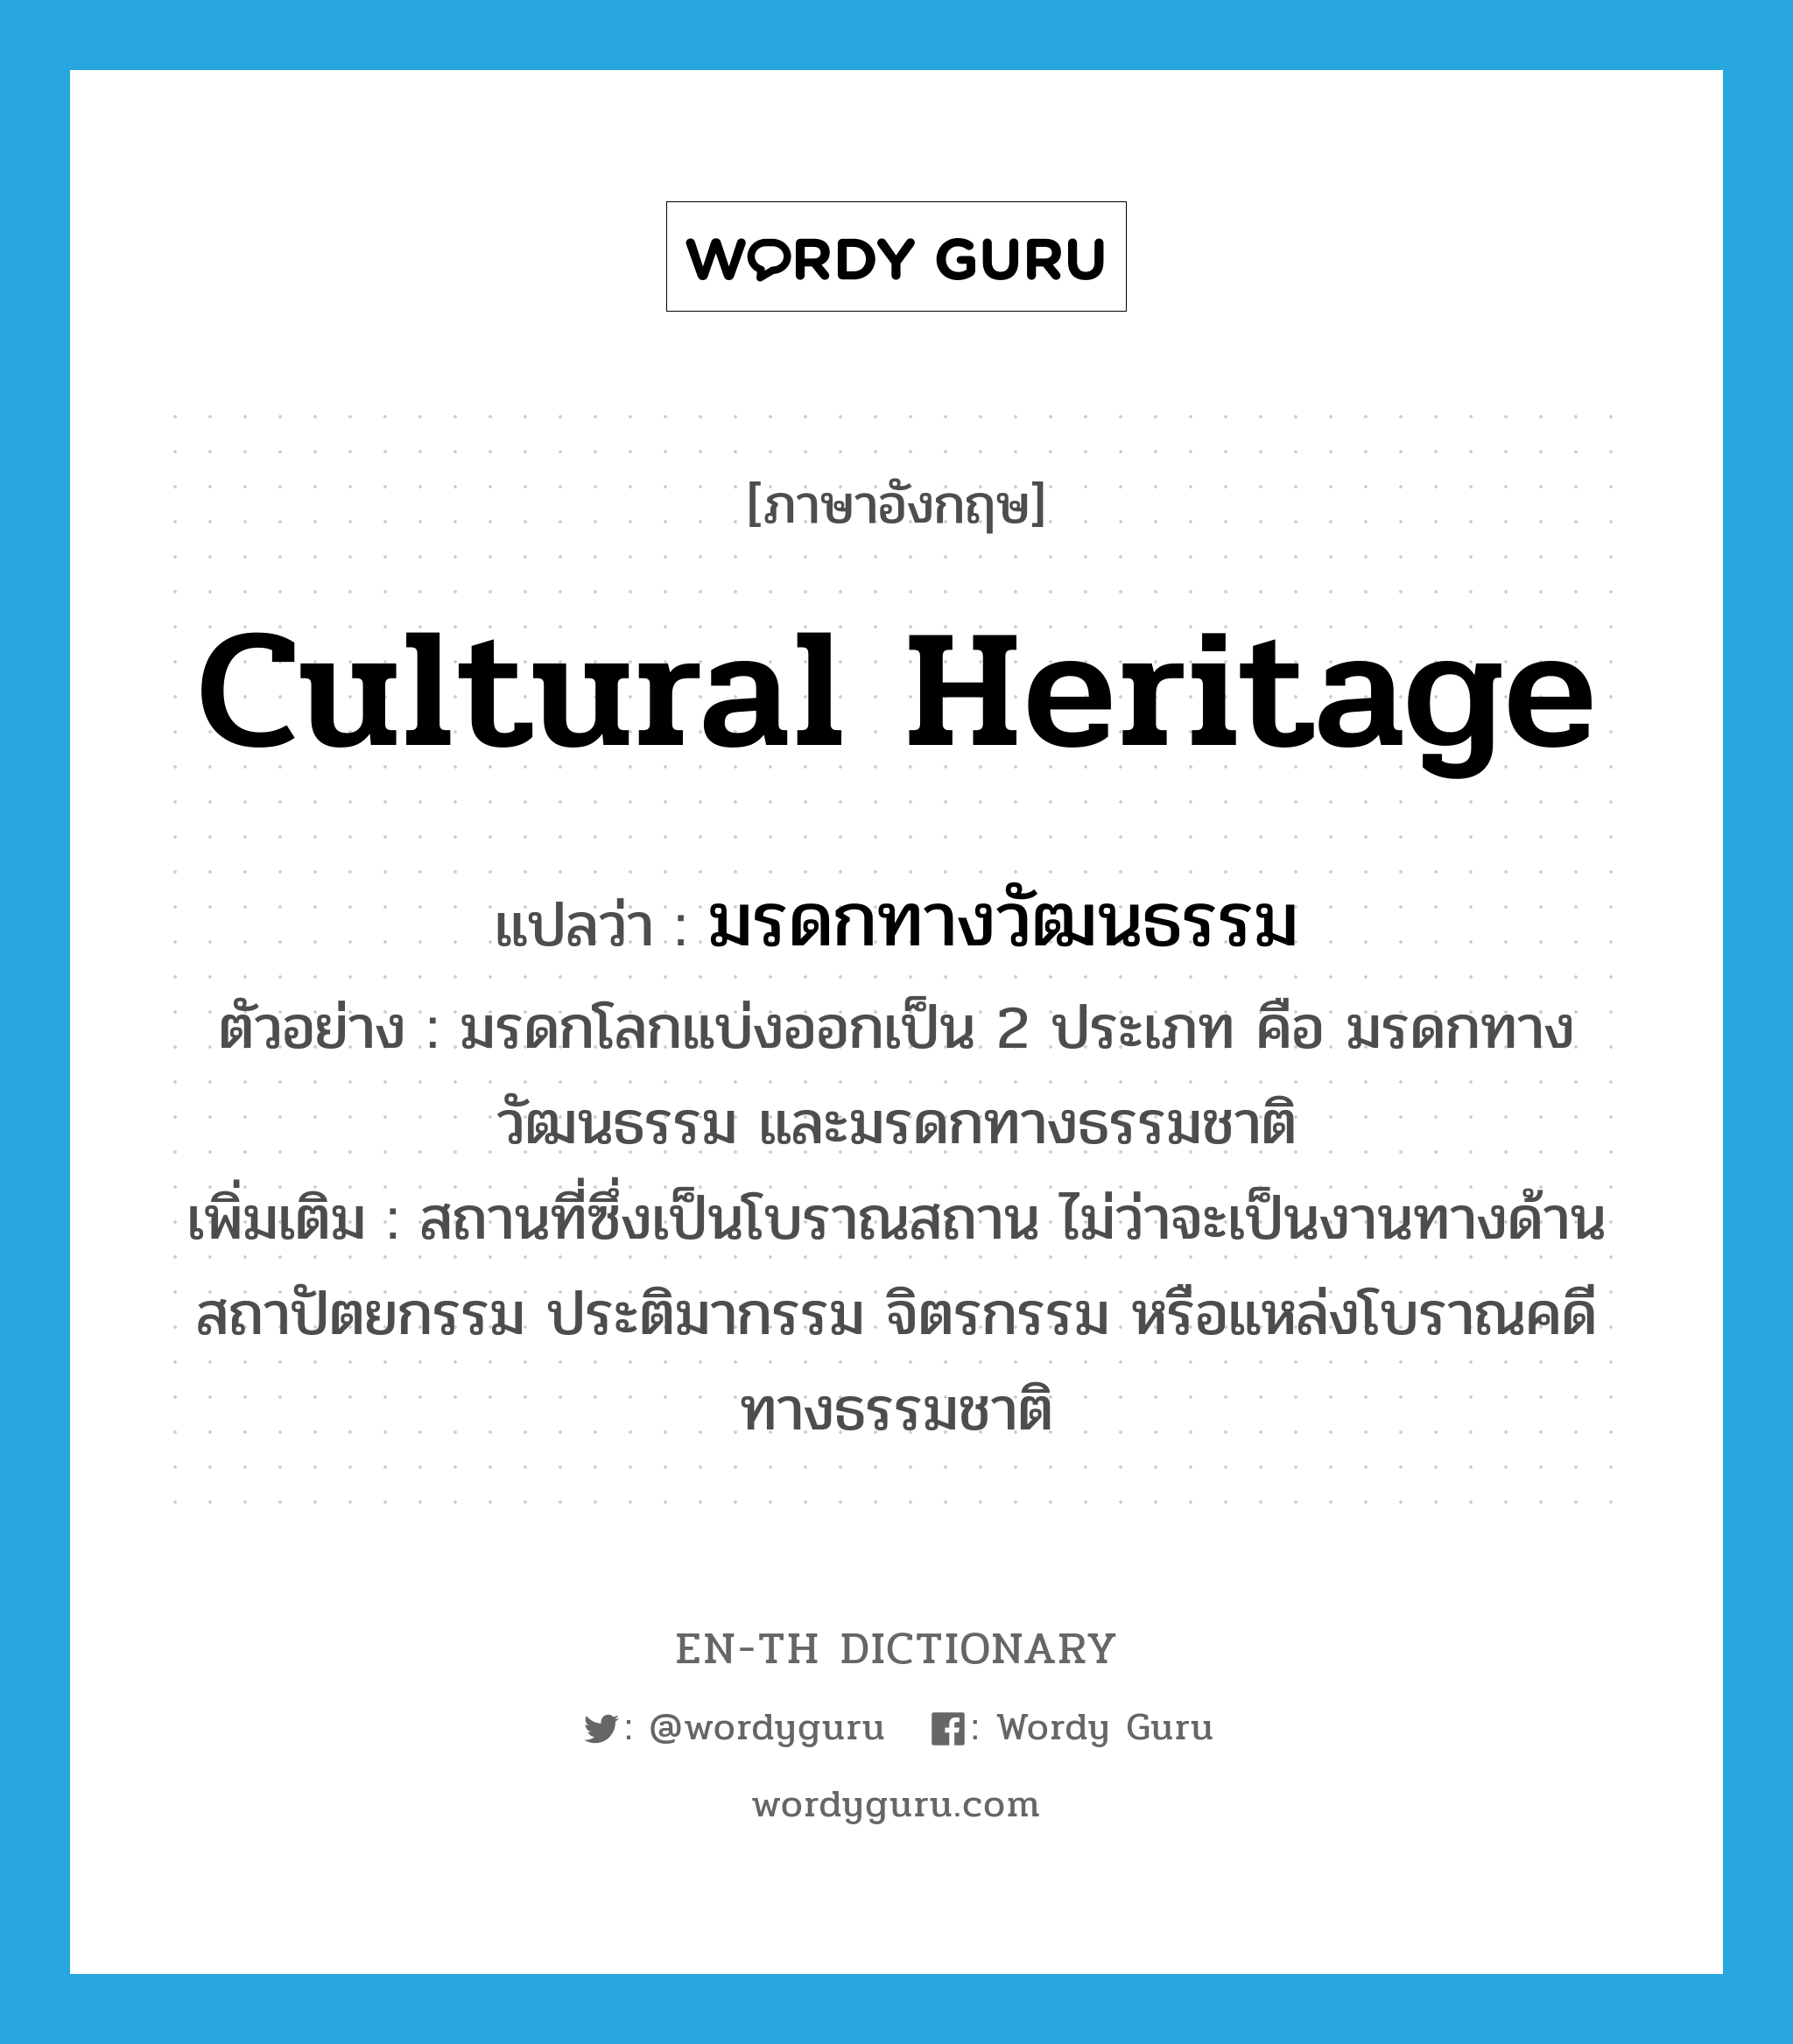 cultural heritage แปลว่า?, คำศัพท์ภาษาอังกฤษ cultural heritage แปลว่า มรดกทางวัฒนธรรม ประเภท N ตัวอย่าง มรดกโลกแบ่งออกเป็น 2 ประเภท คือ มรดกทางวัฒนธรรม และมรดกทางธรรมชาติ เพิ่มเติม สถานที่ซึ่งเป็นโบราณสถาน ไม่ว่าจะเป็นงานทางด้านสถาปัตยกรรม ประติมากรรม จิตรกรรม หรือแหล่งโบราณคดีทางธรรมชาติ หมวด N